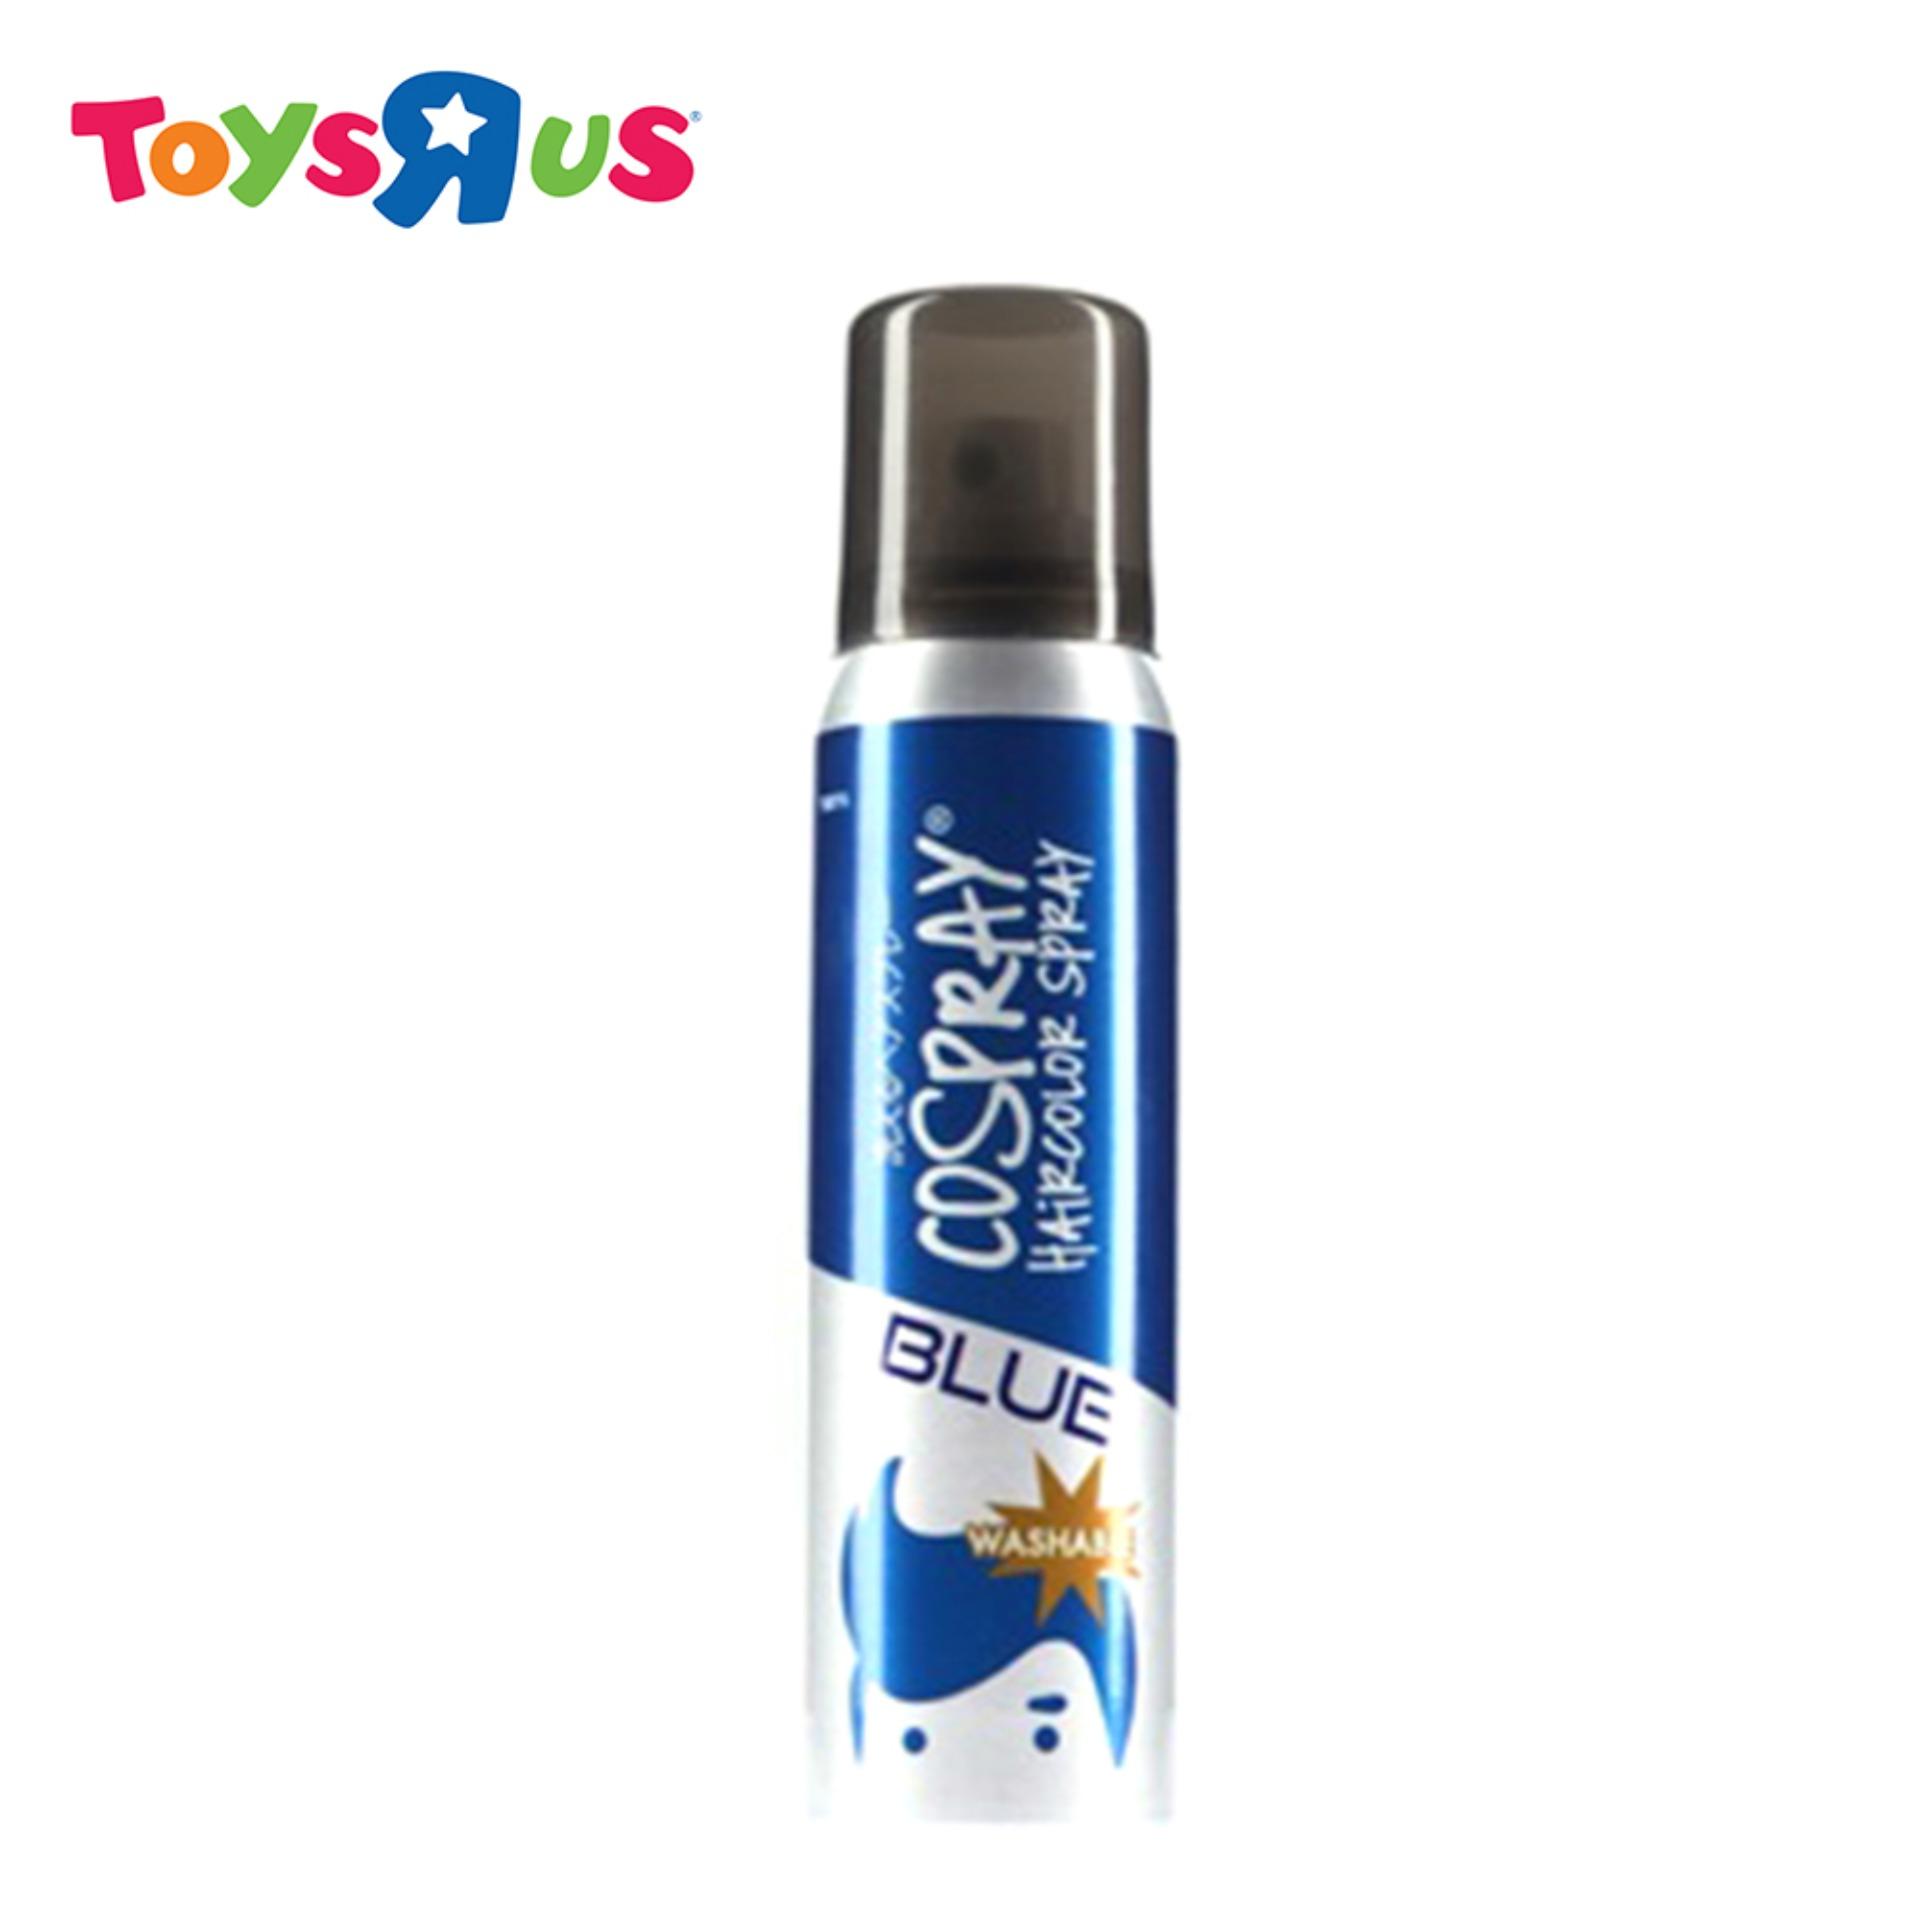 Cospray Washable Hair Color Spray (Blue) | Toys R Us